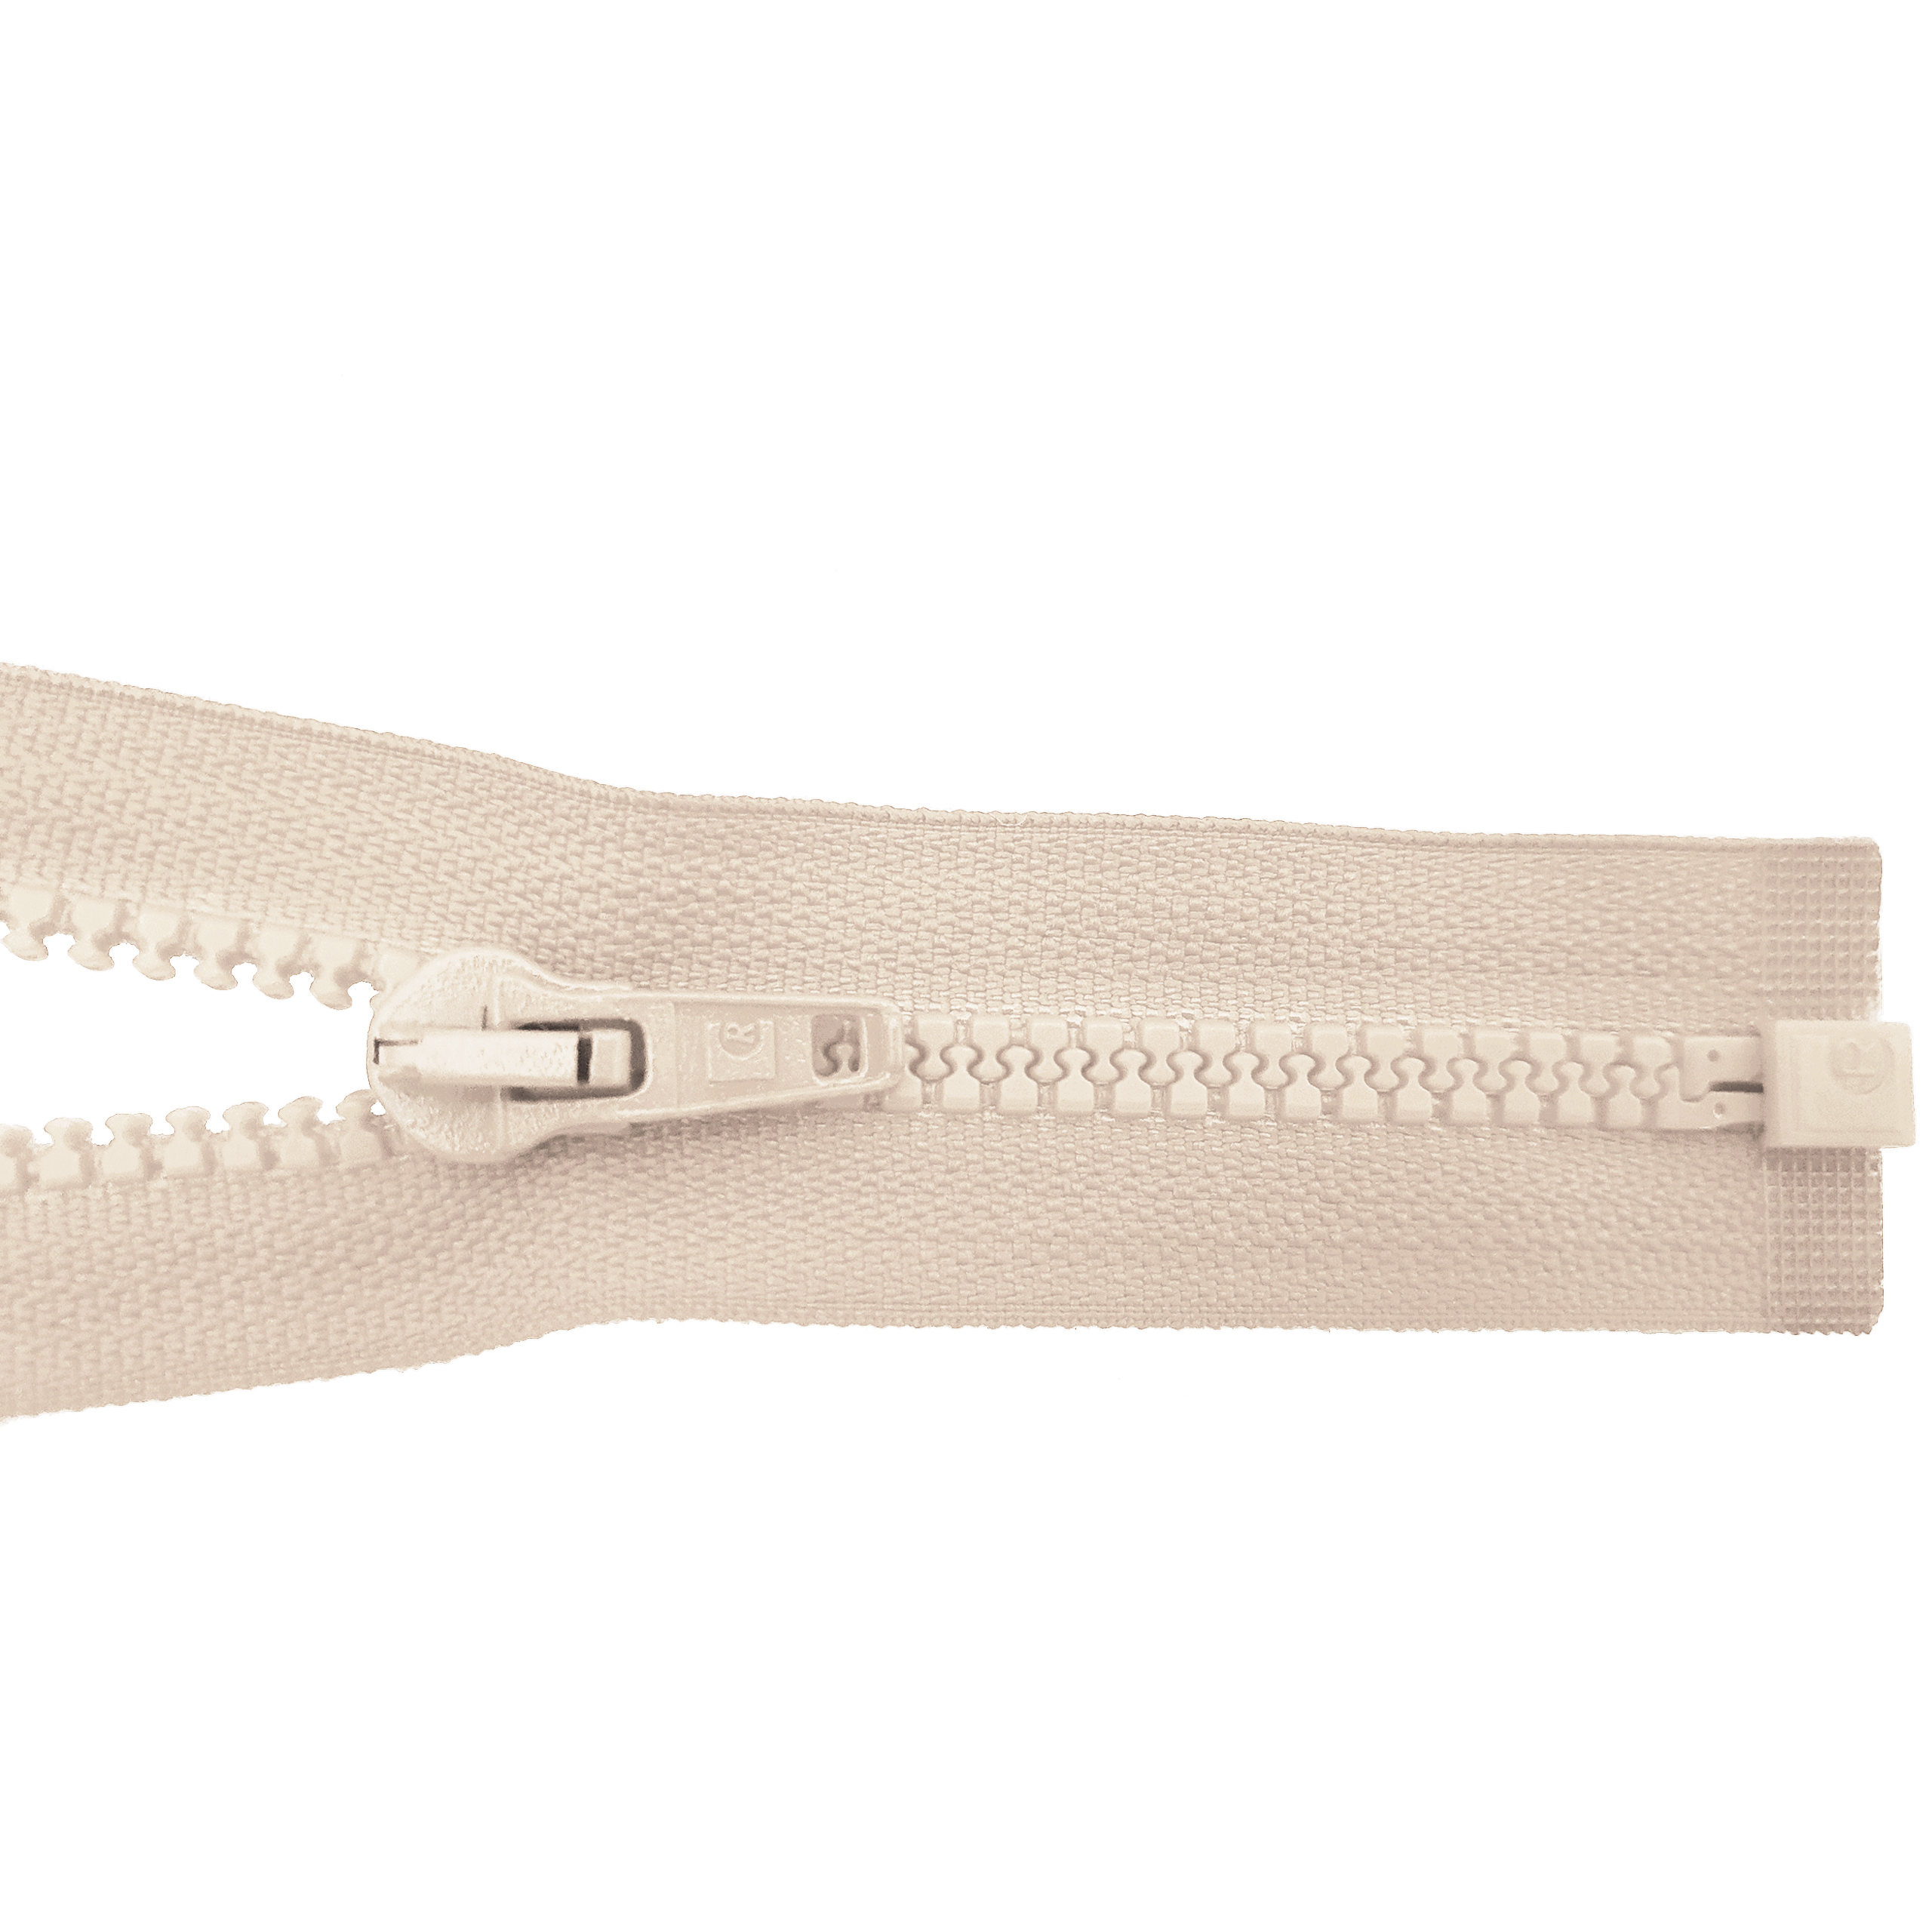 Reißverschluss 80cm, teilbar, Kstoff Zähne breit, hellbeige, hochwertiger Marken-Reißverschluss von Rubi/Barcelona